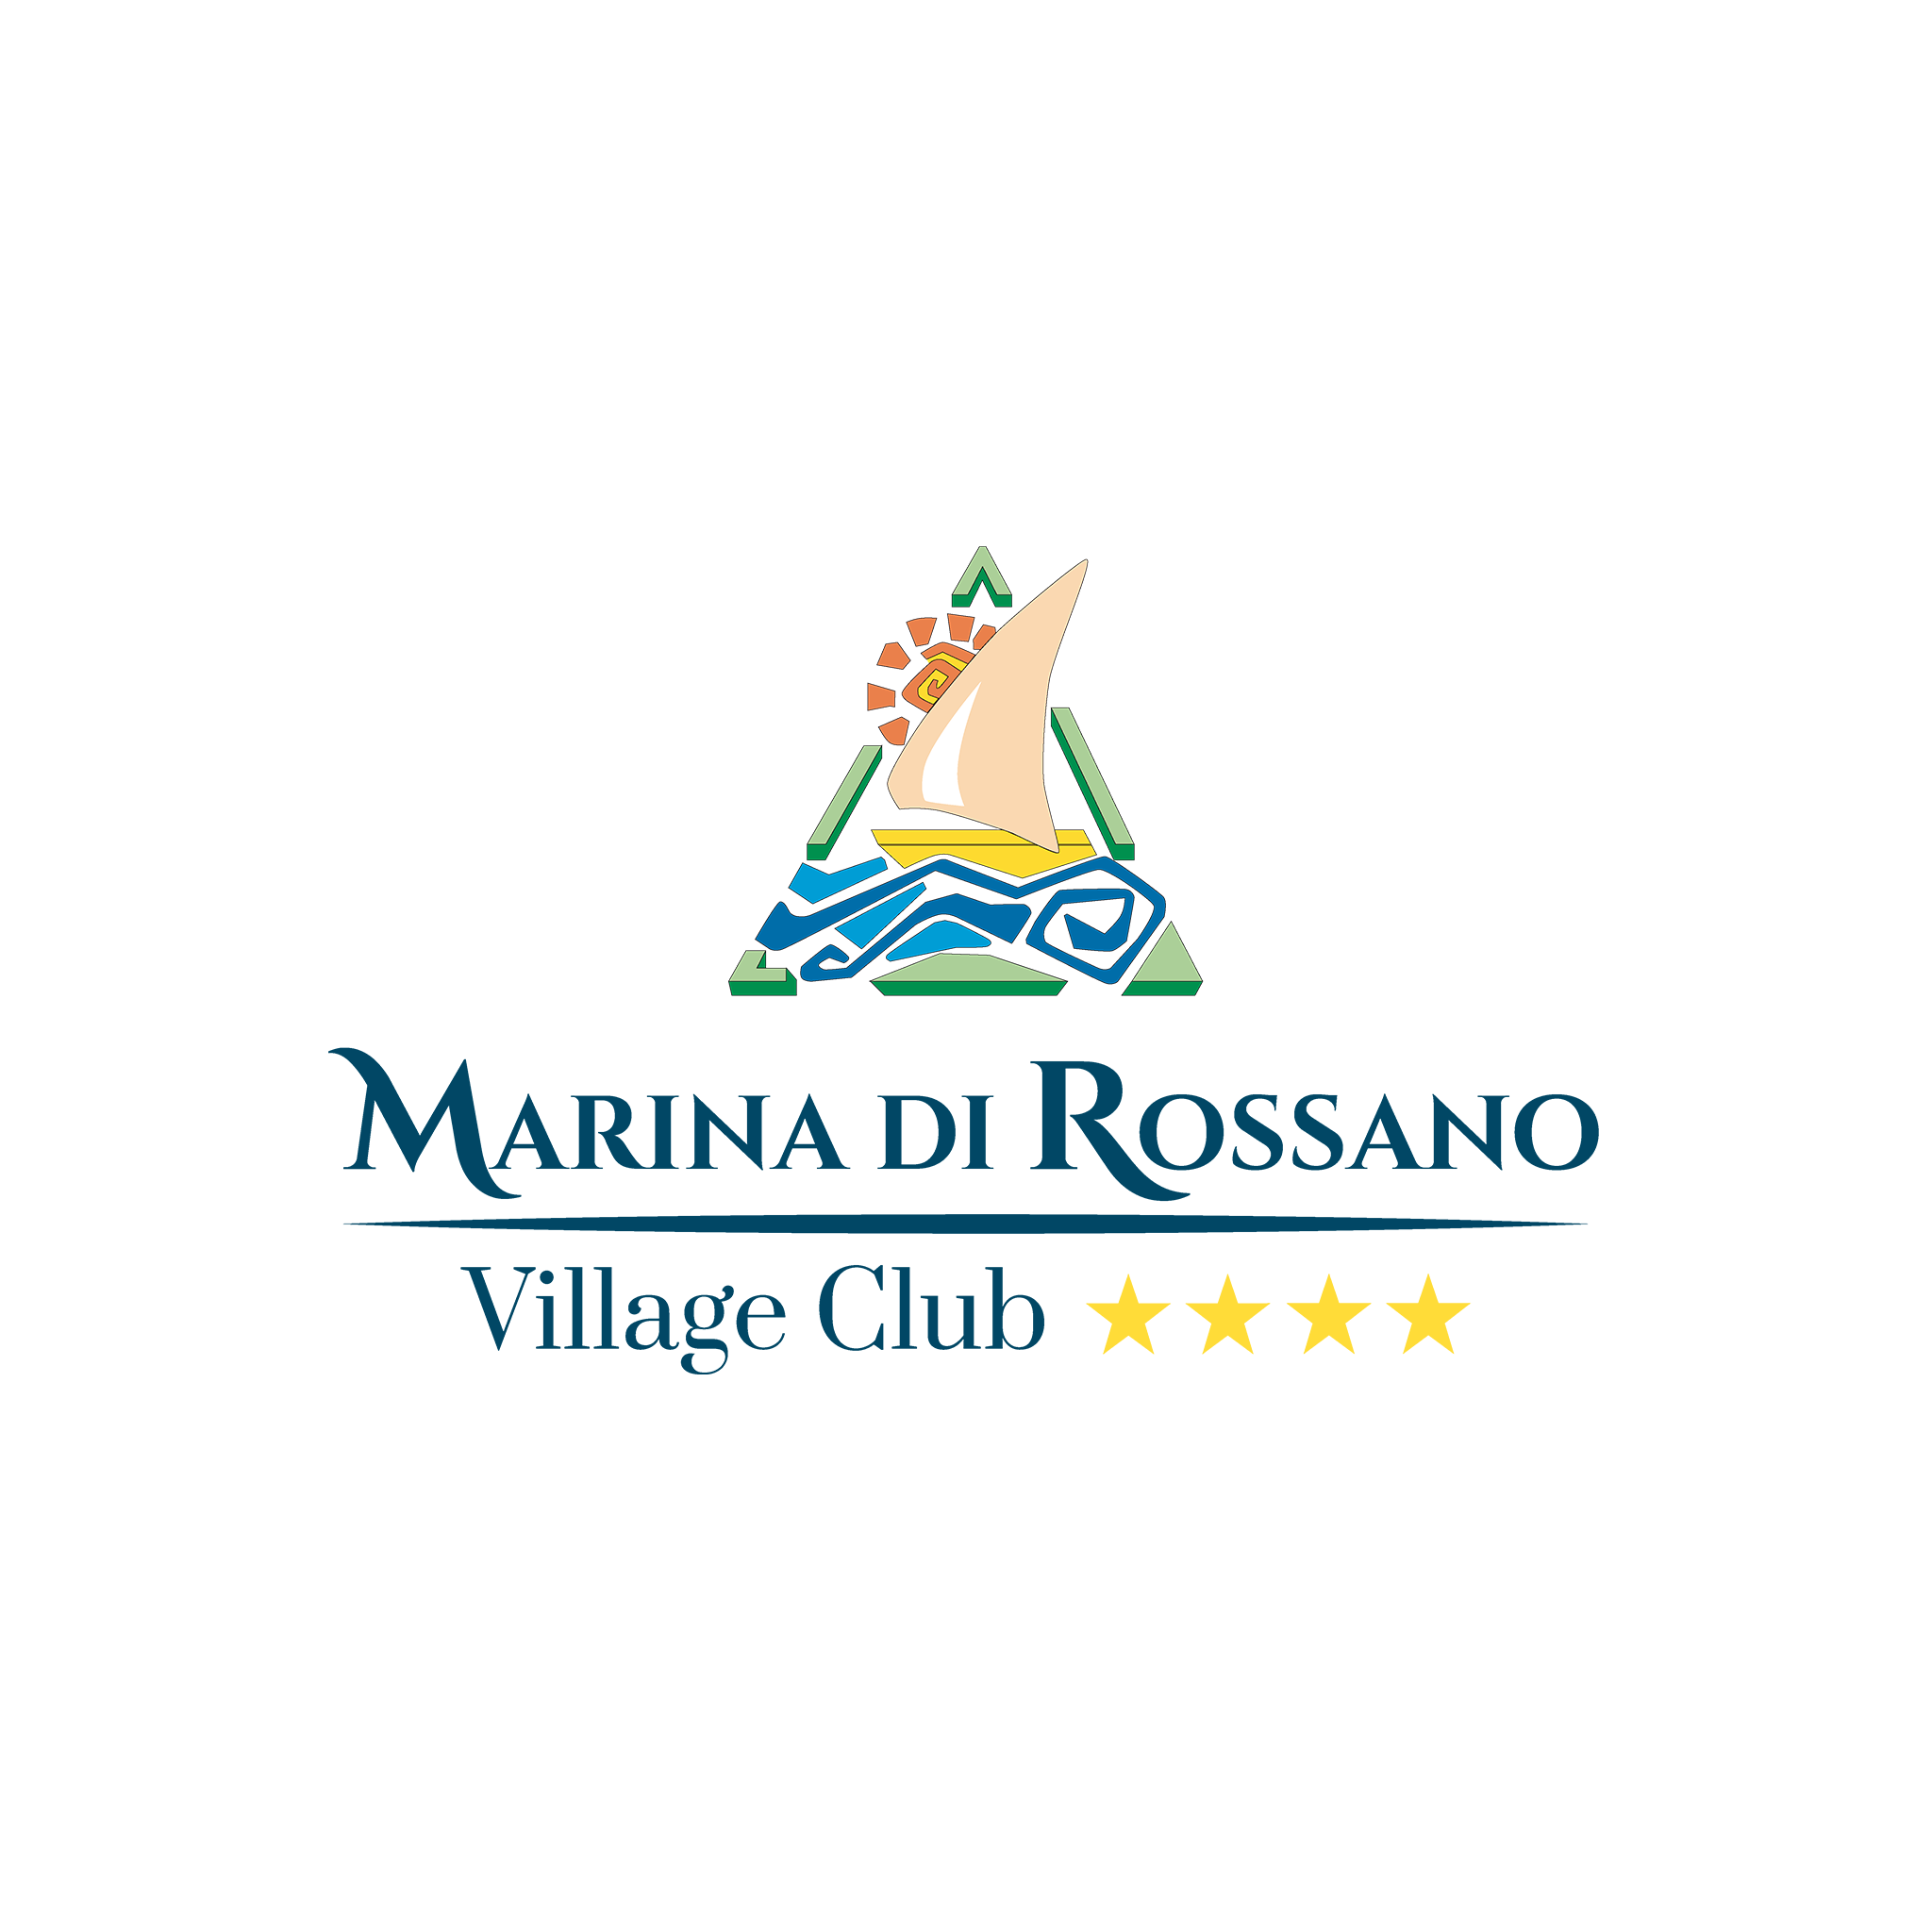 Marina di Rossano Village Club